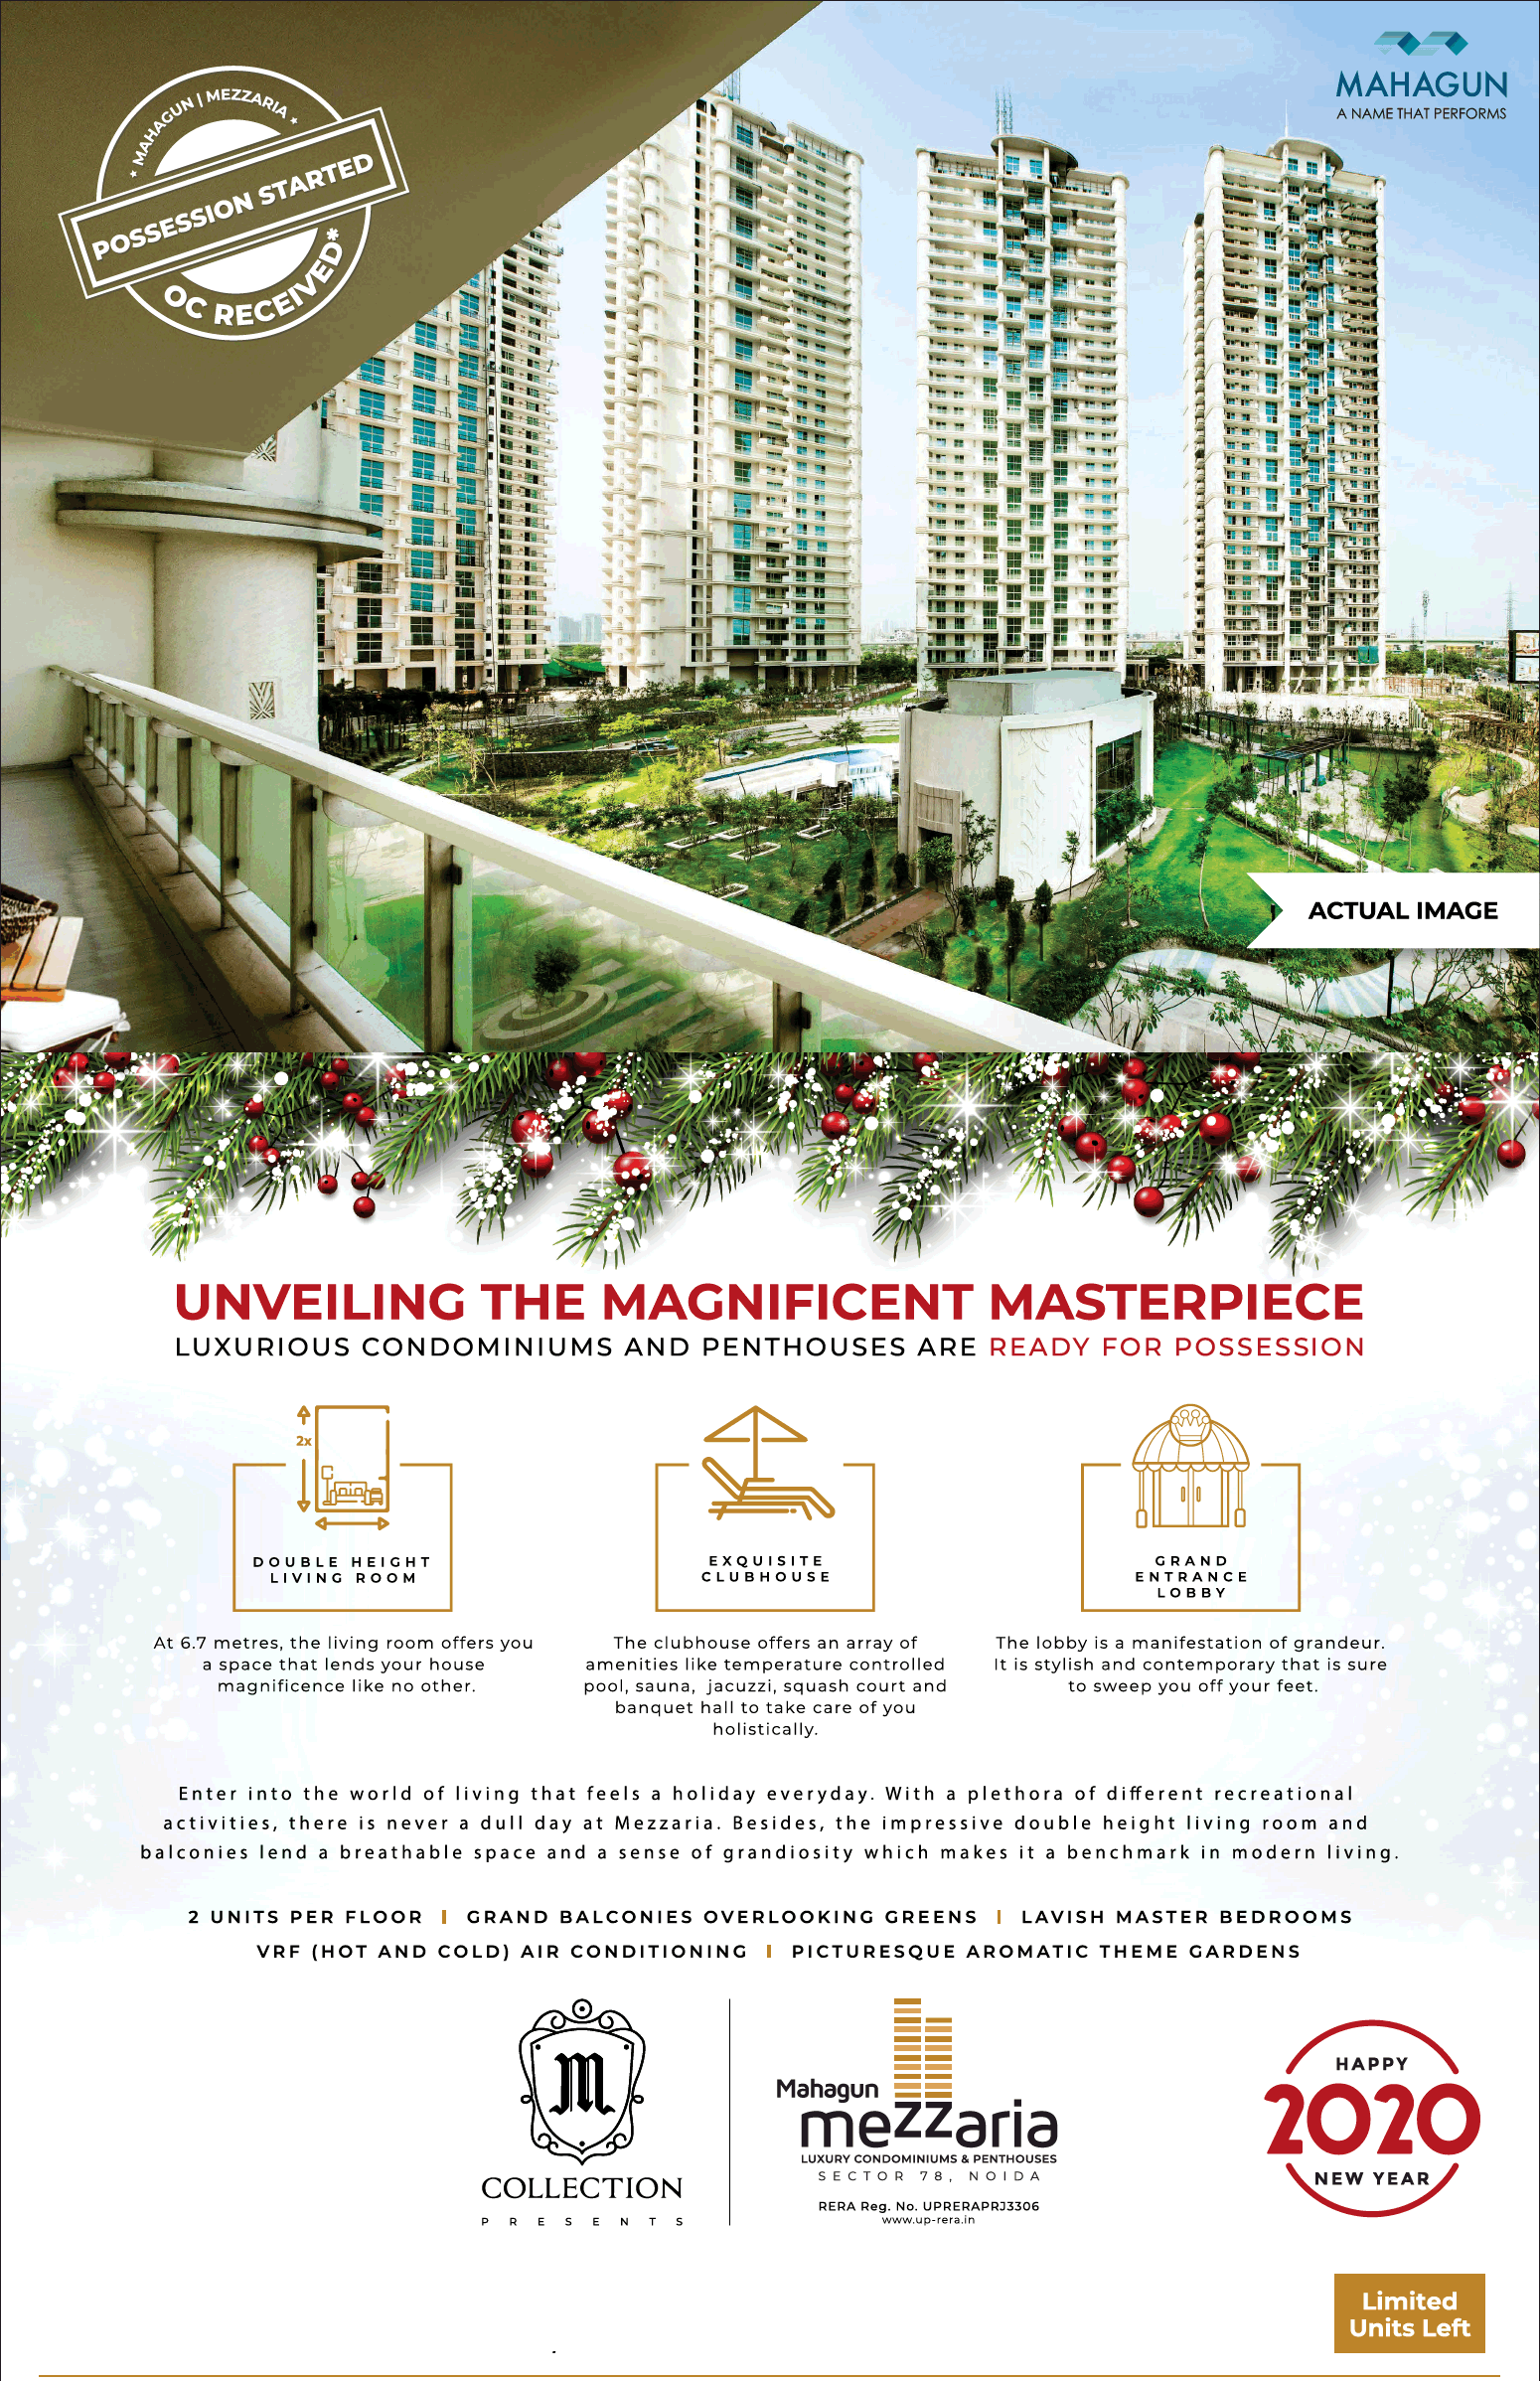 Luxury condominium and penthouse at Mahagun Mezzaria Sector 78, Noida